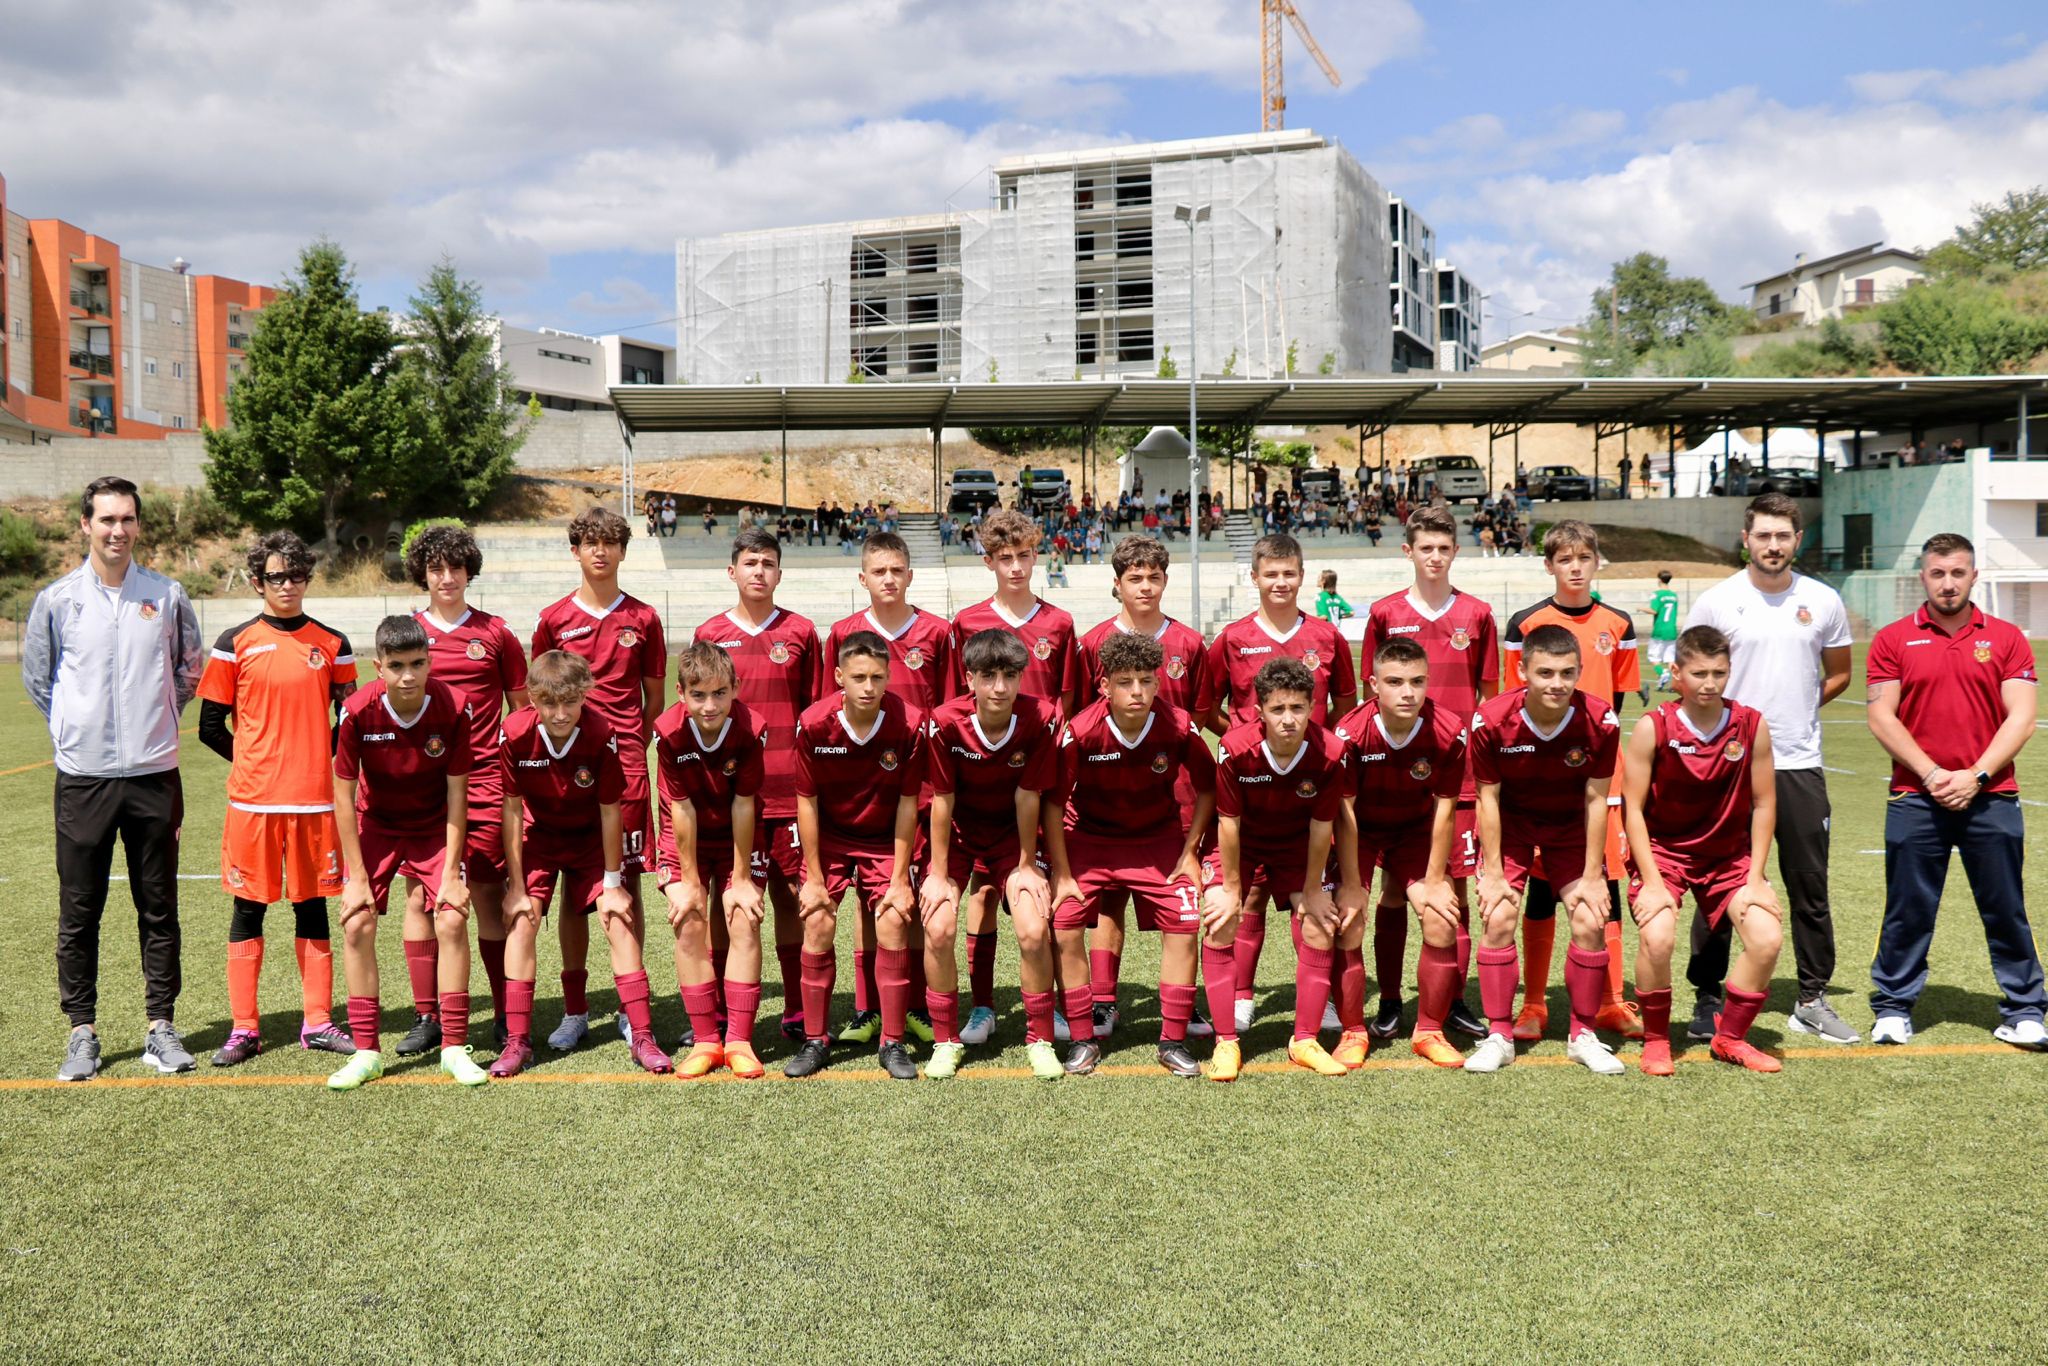 Convocatória Seleção Distrital Sub-14 Futebol Masculino para o Torneio Interassociações "Lopes da Silva"